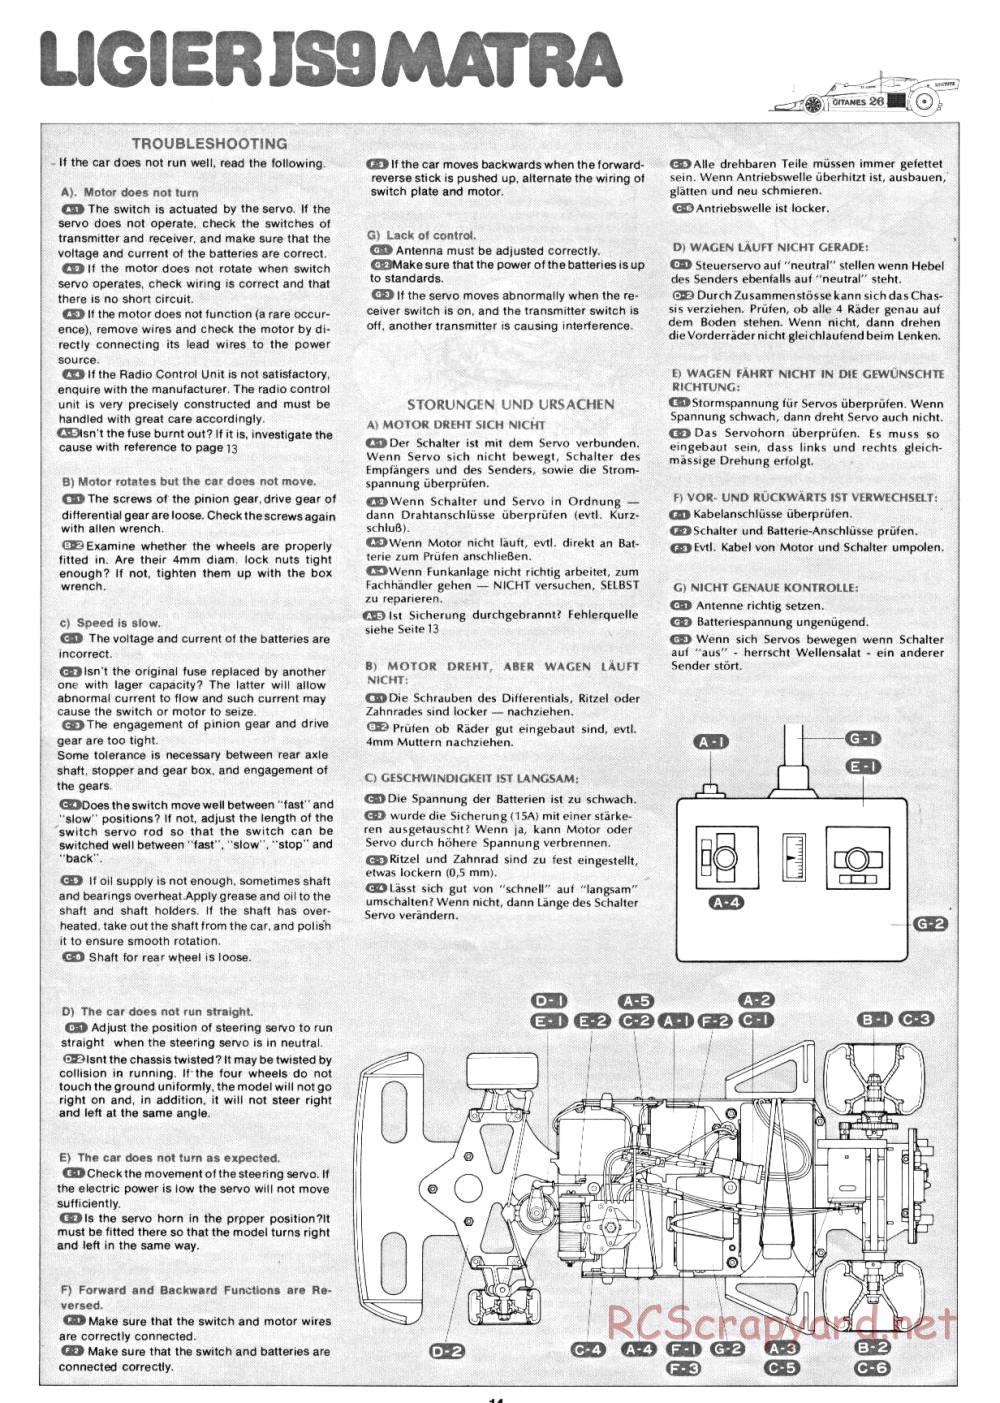 Tamiya - Ligier JS9 Matra - 58010 - Manual - Page 14